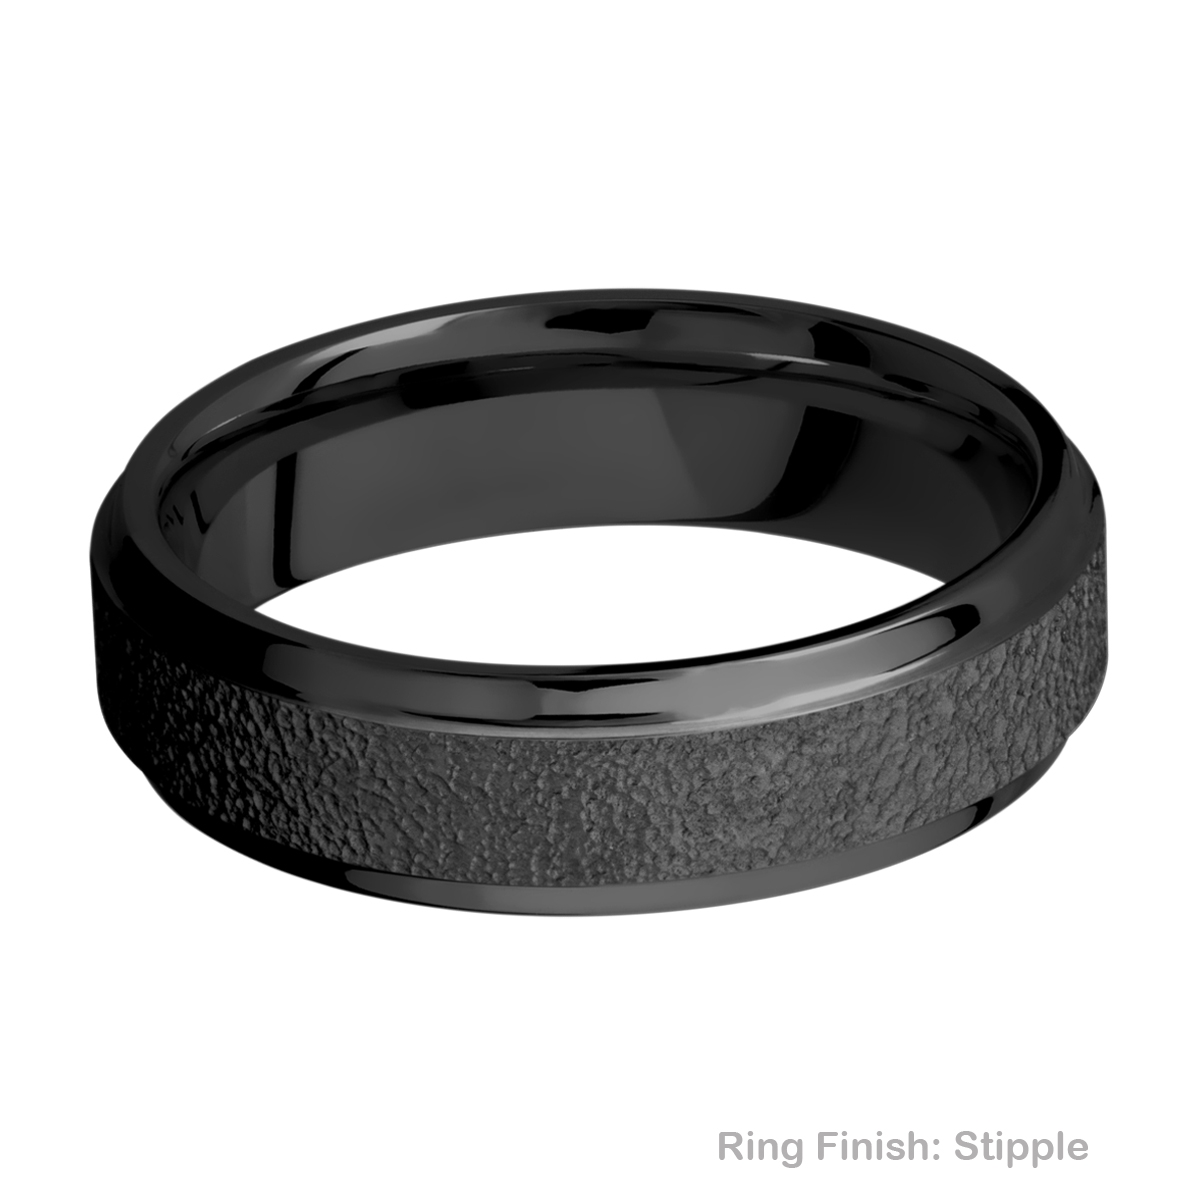 Lashbrook Z6B(S) Zirconium Wedding Ring or Band